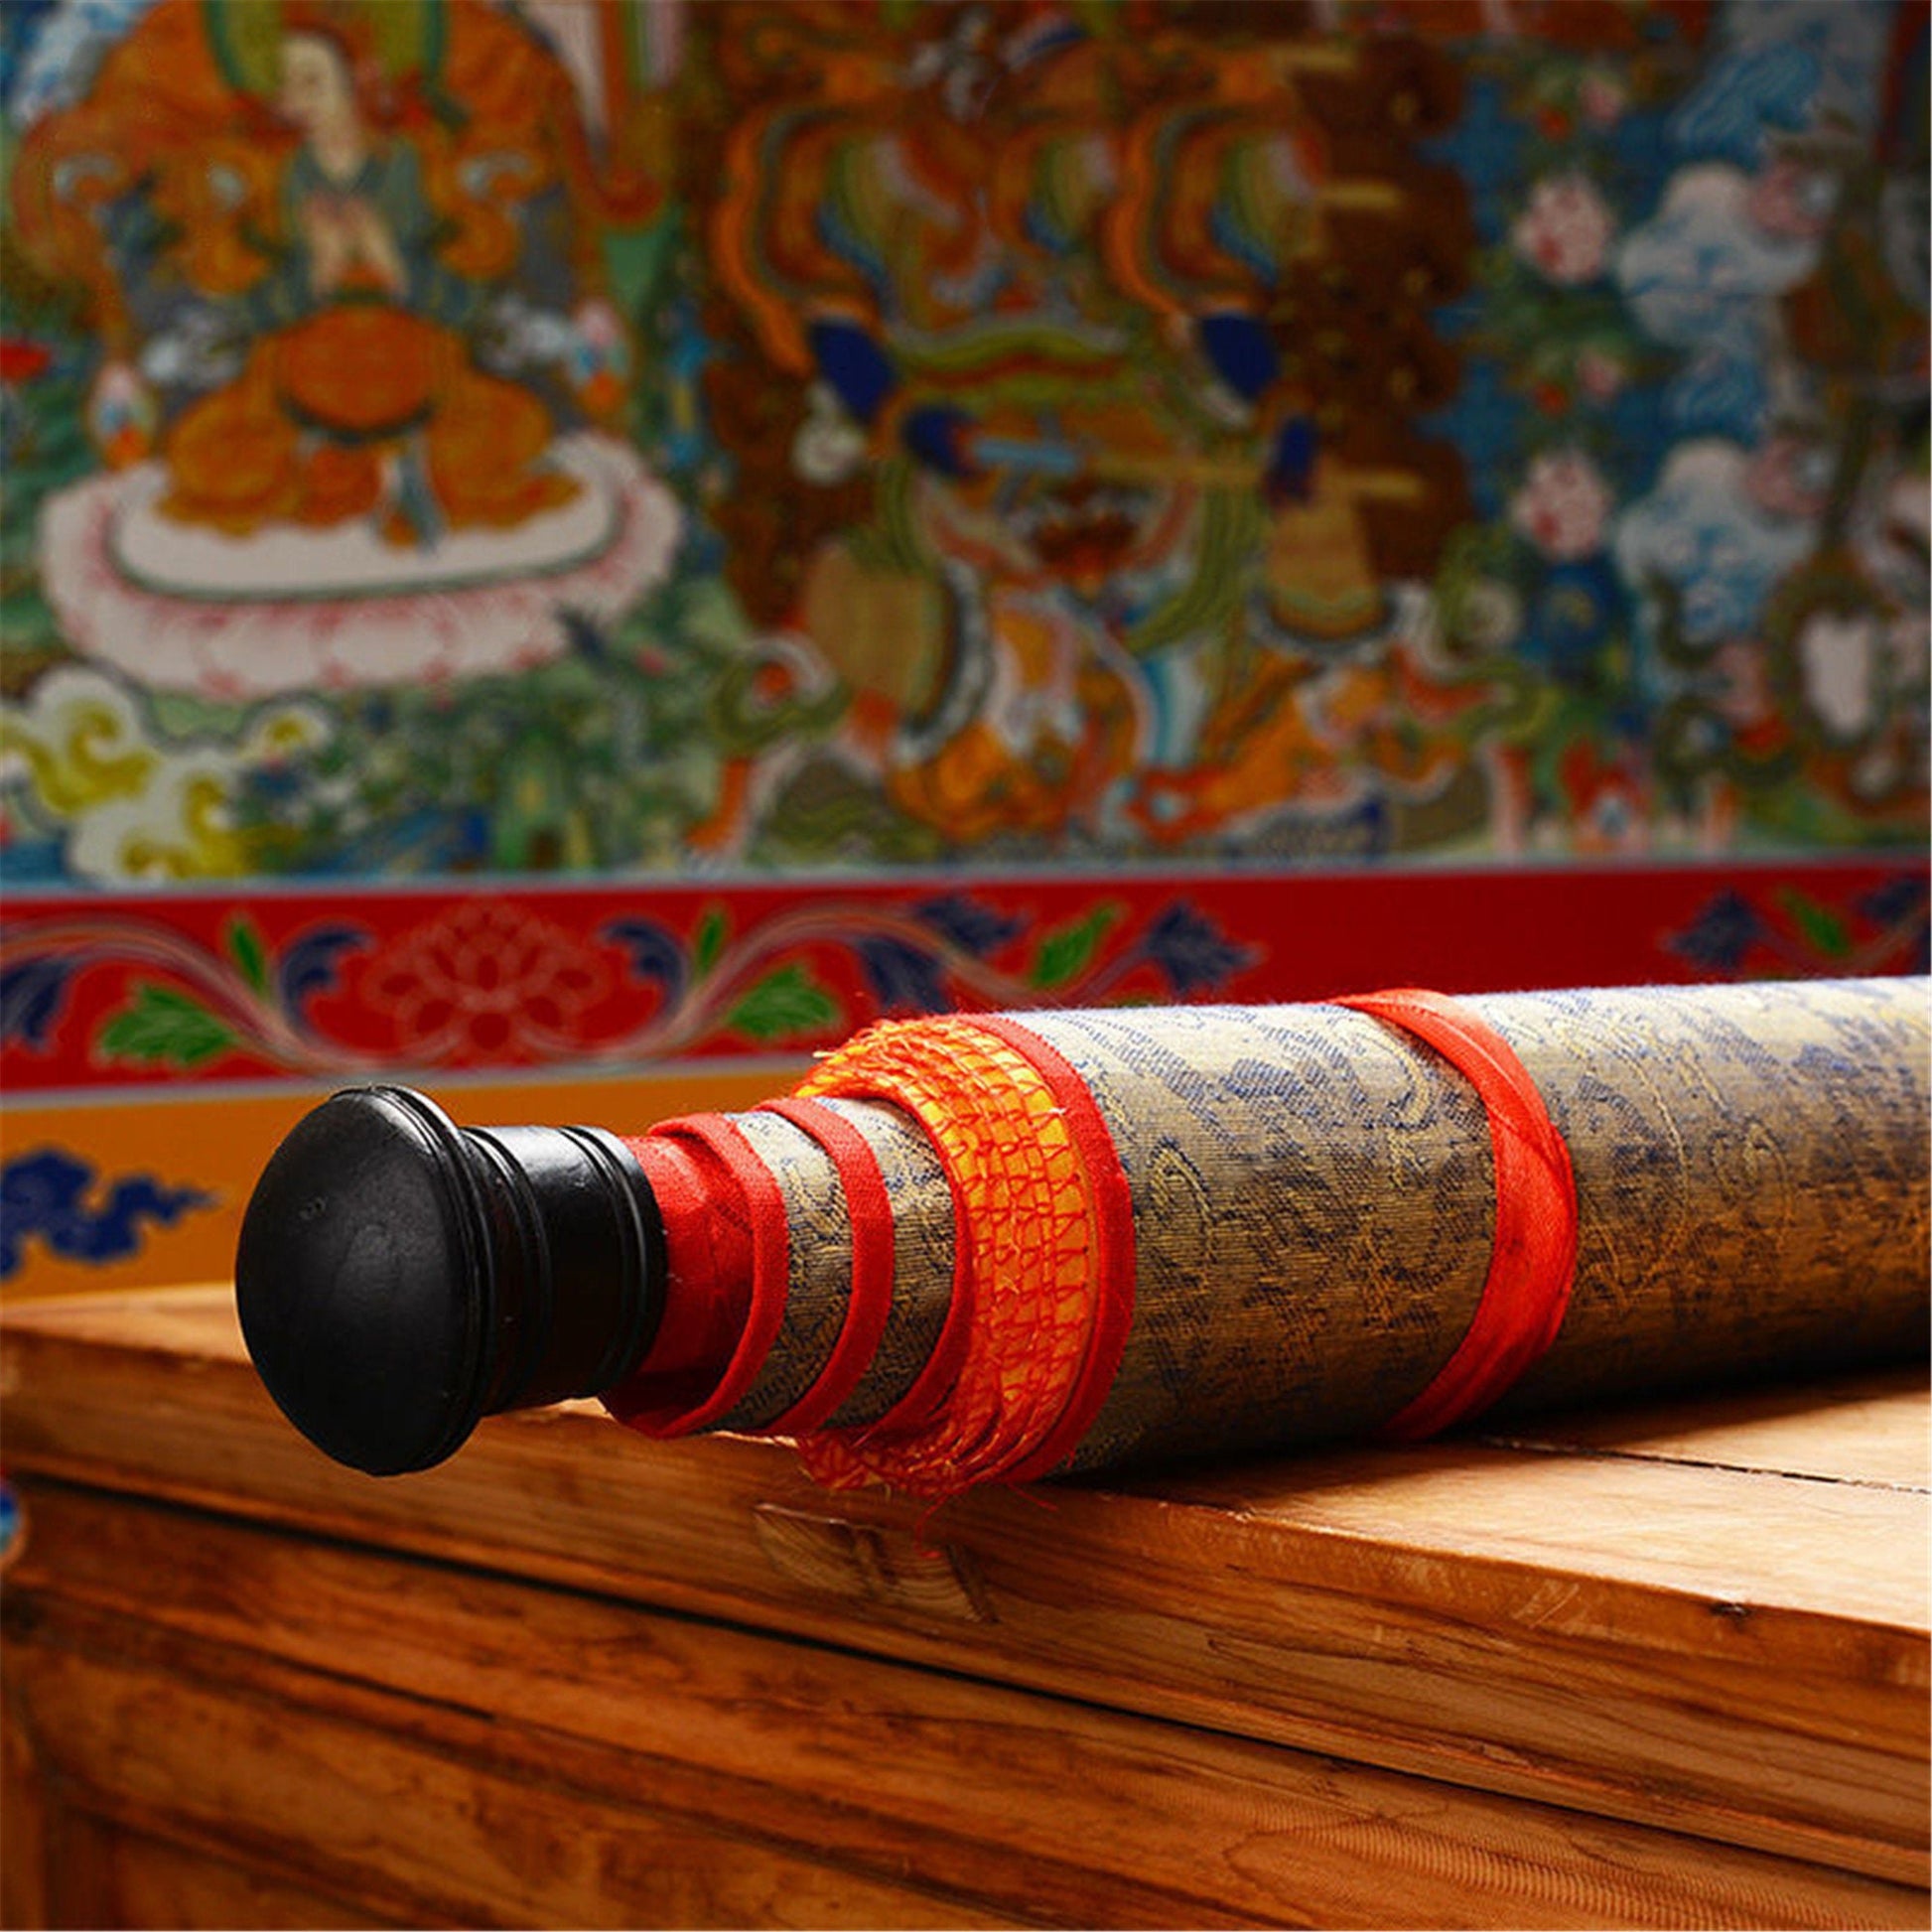 Gandhanra Woodblock Thangka,Tsongkhapa,Derge Sutra Printing Temple